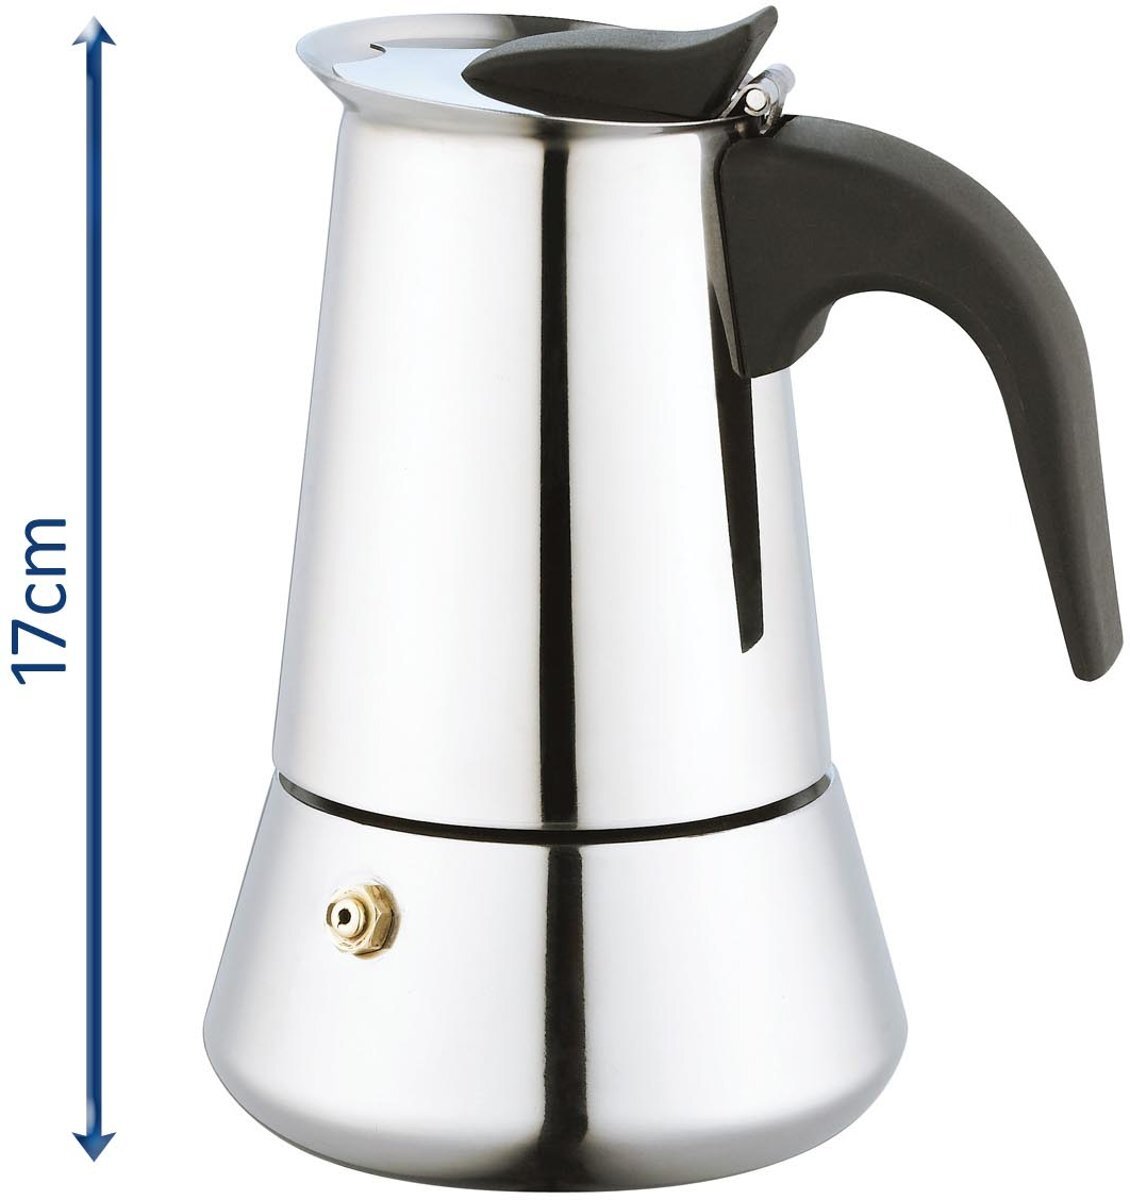 KINGHOFF Koffiezetapparaat - Italiaanse Espresso Maker - 200ml - 4 kops - Moka Express Percolator INDUCTIE 4 kopjes Roestvrijstaal - PALERMO